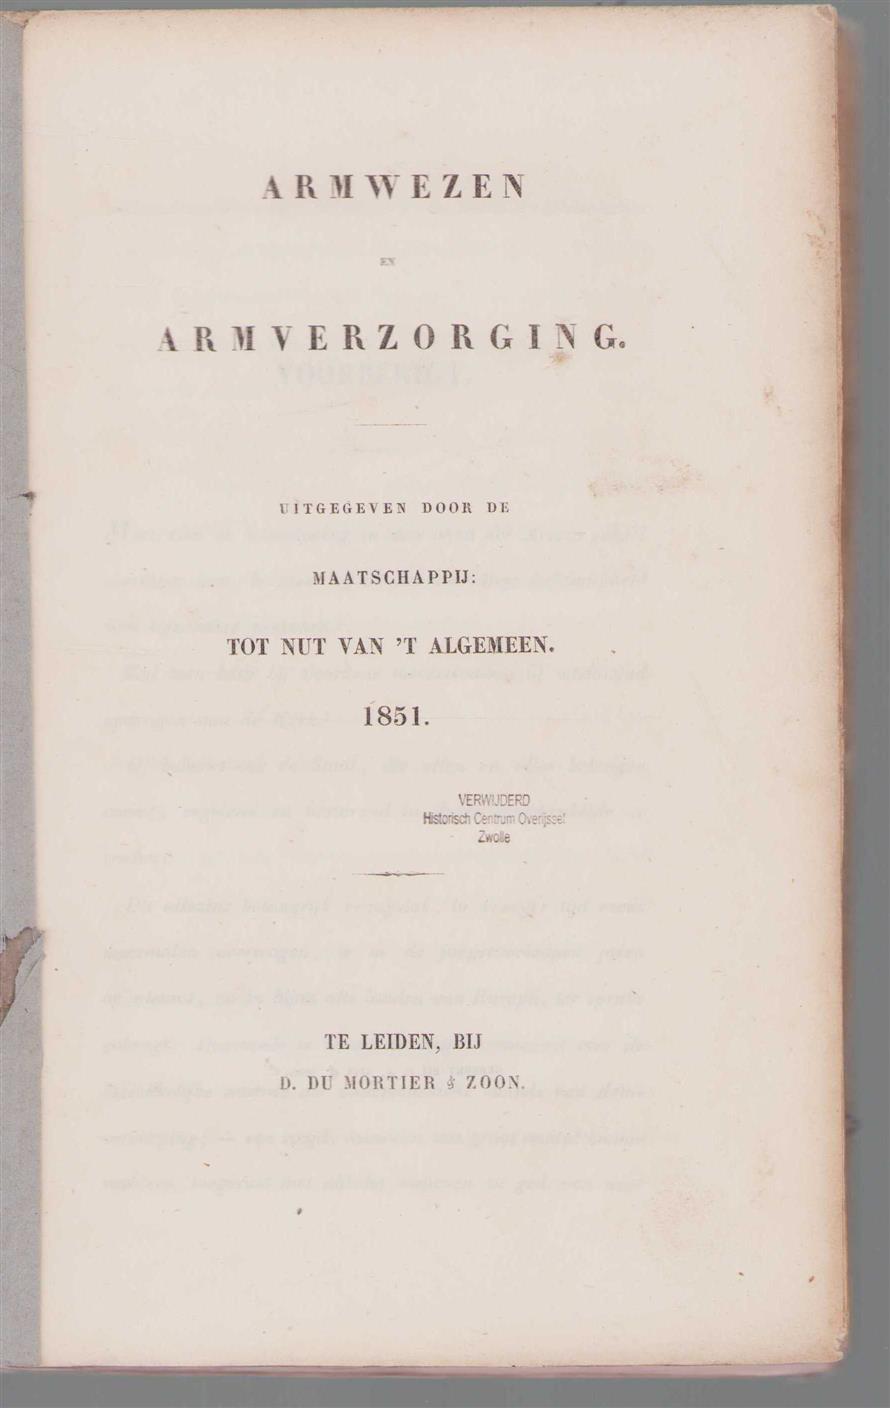 Blaupot ten Cate, S., Maatschappij: Tot Nut van 't Algemeen - Armwezen en armverzorging (originbal edition)